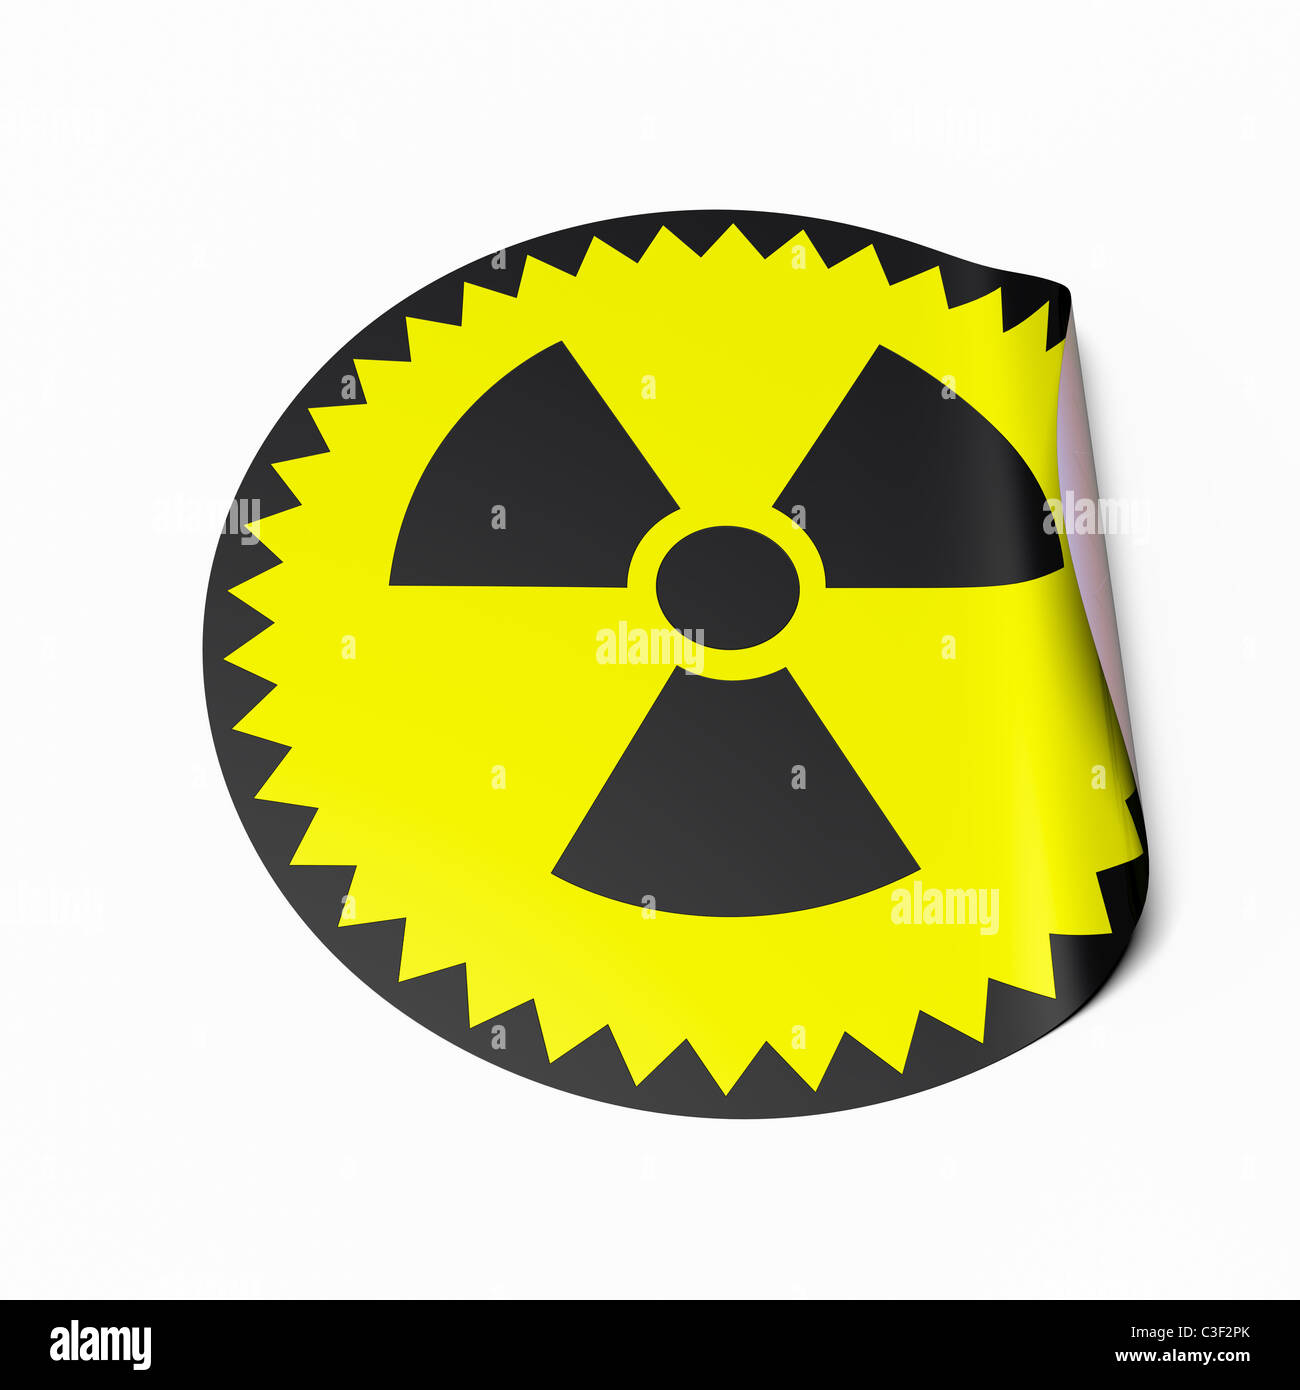 Immagine ad alta risoluzione di un adesivo con il simbolo radioattivo. Immagine concettuale per il nucleare o il rischio nucleare. Foto Stock